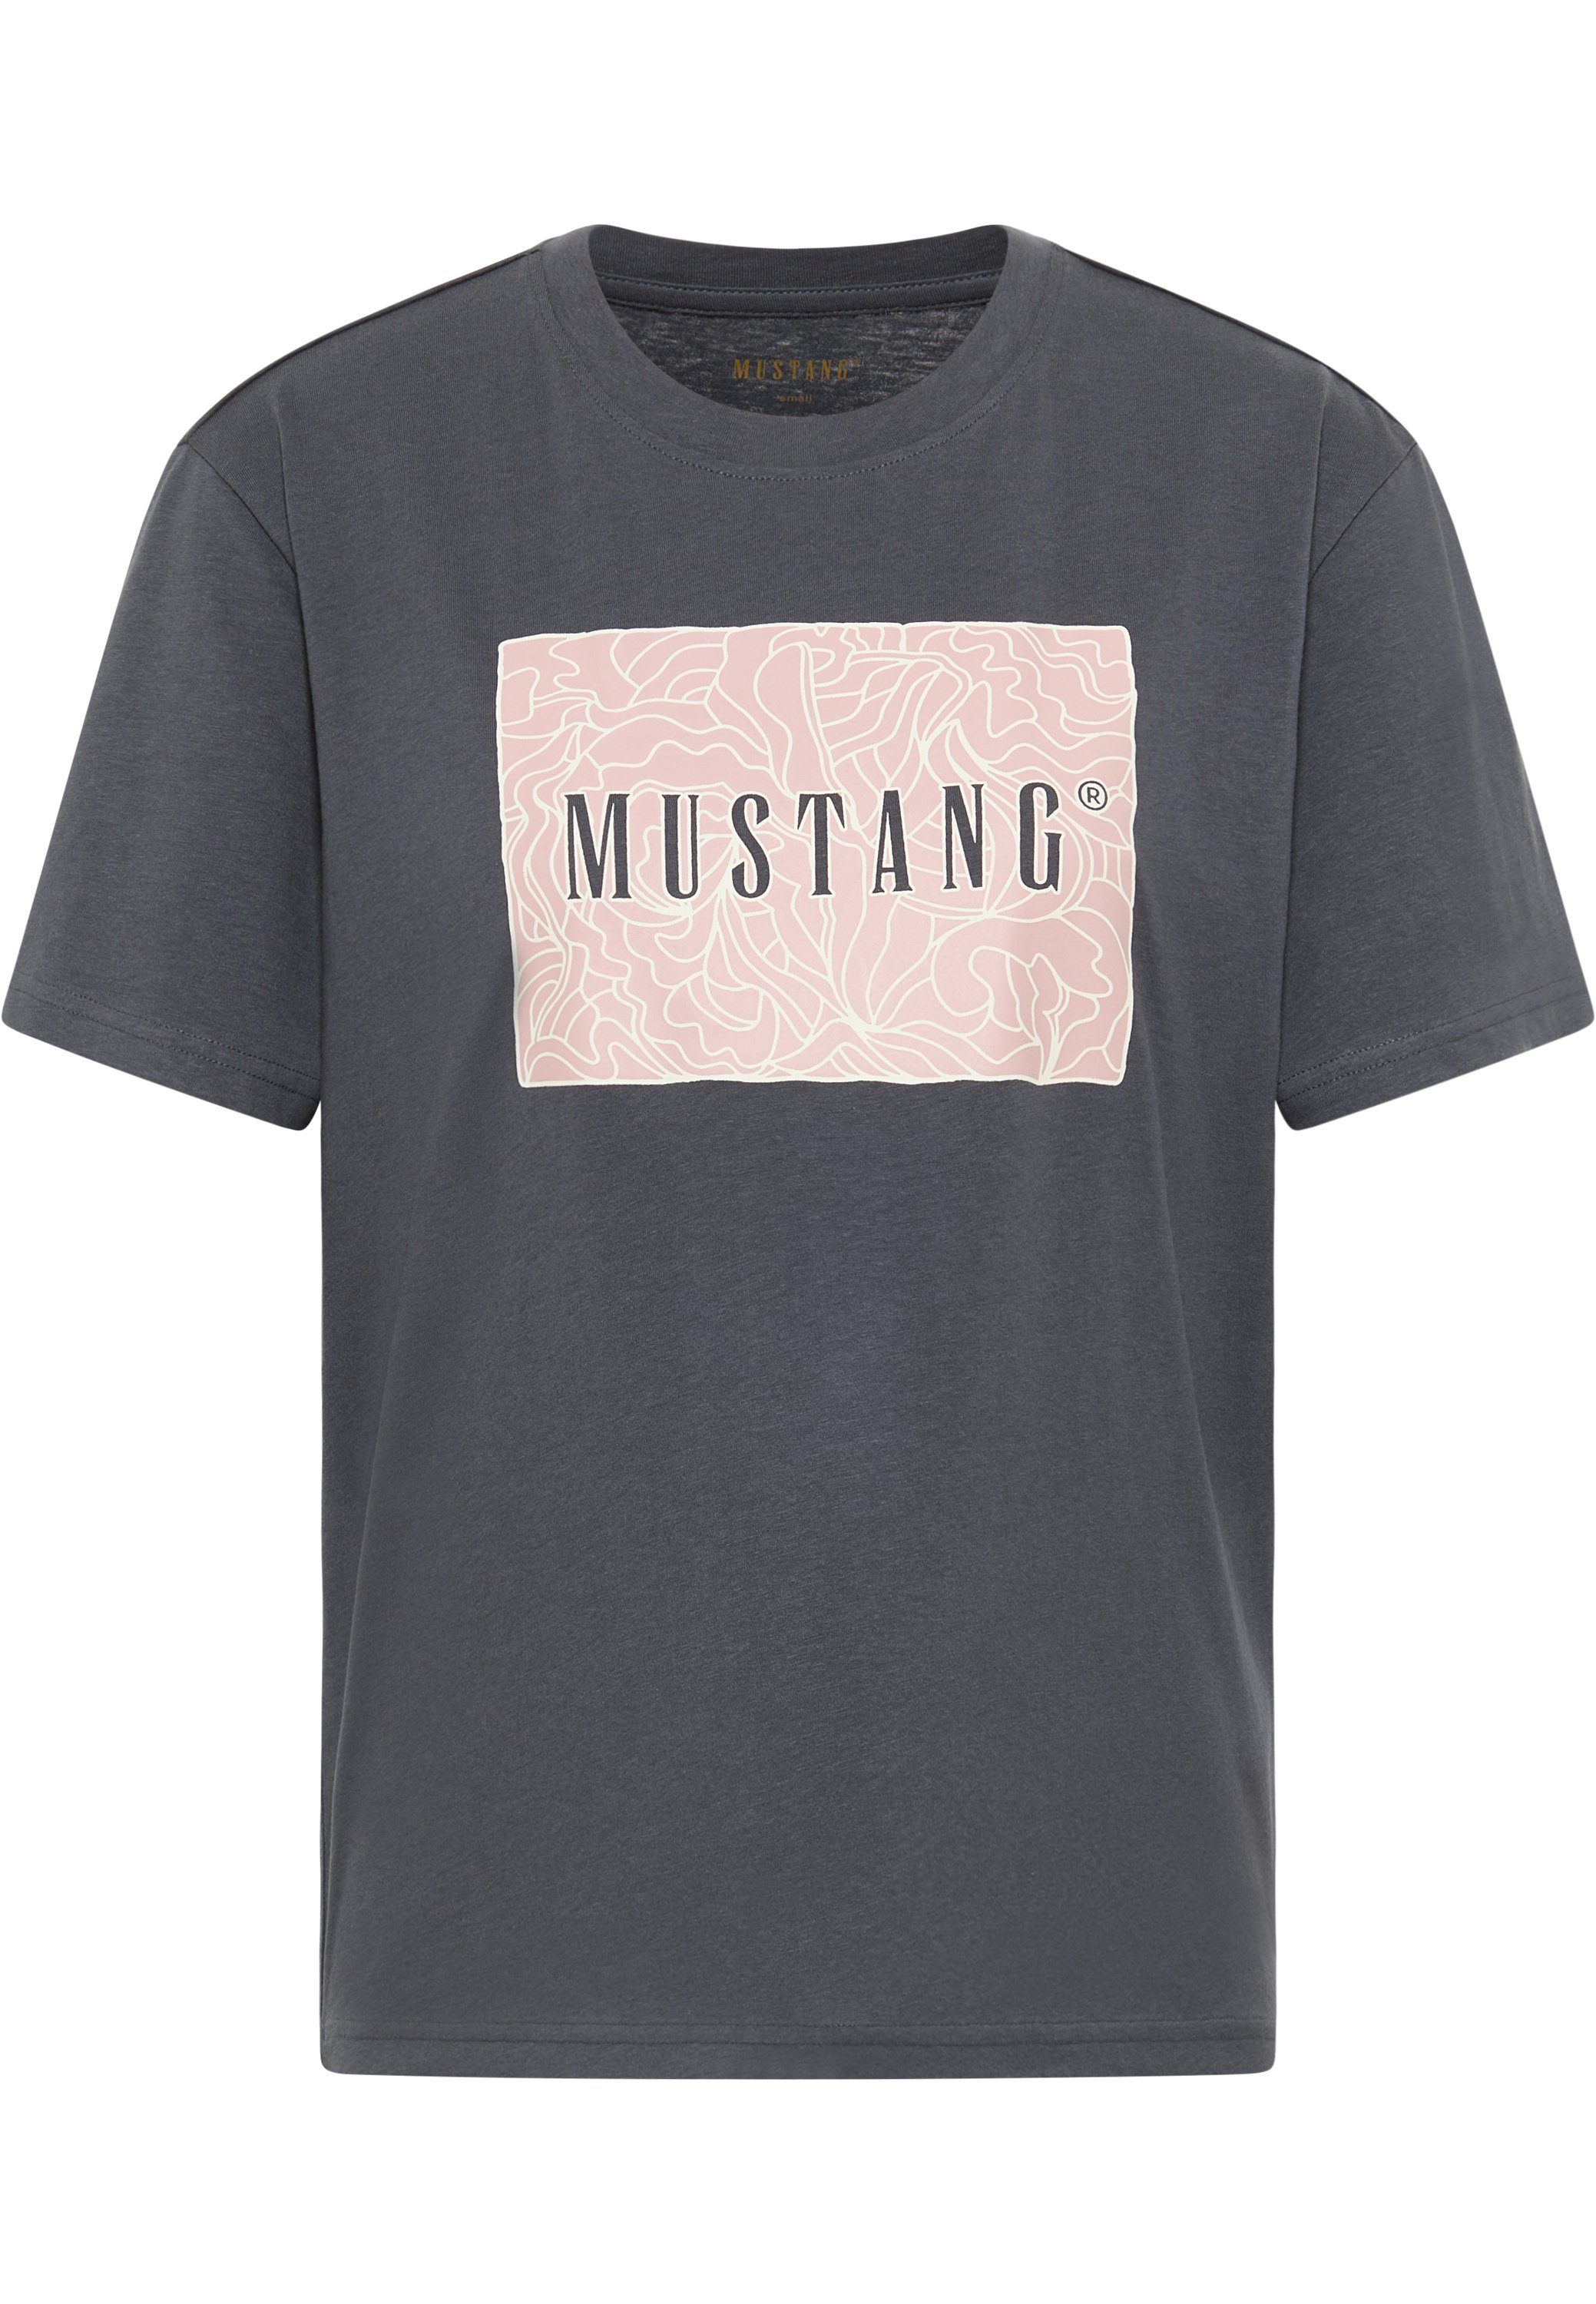 Shirts für Mustang | OTTO kaufen online Damen